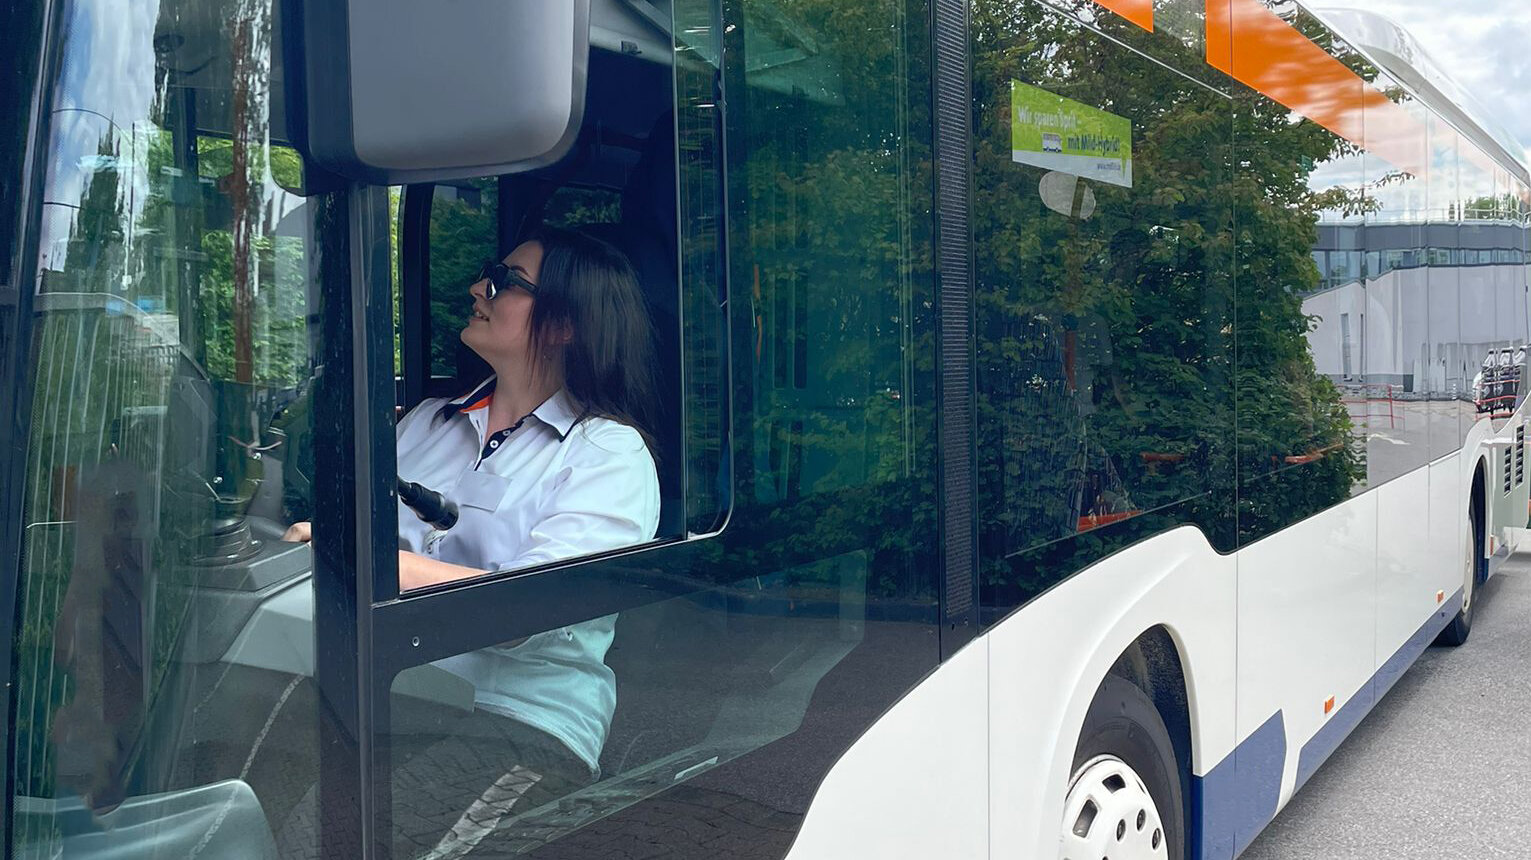 Ewa sitzt in der Fahrerkabine im Bus, schaut in den Rückspiegel und fährt rückwärts.